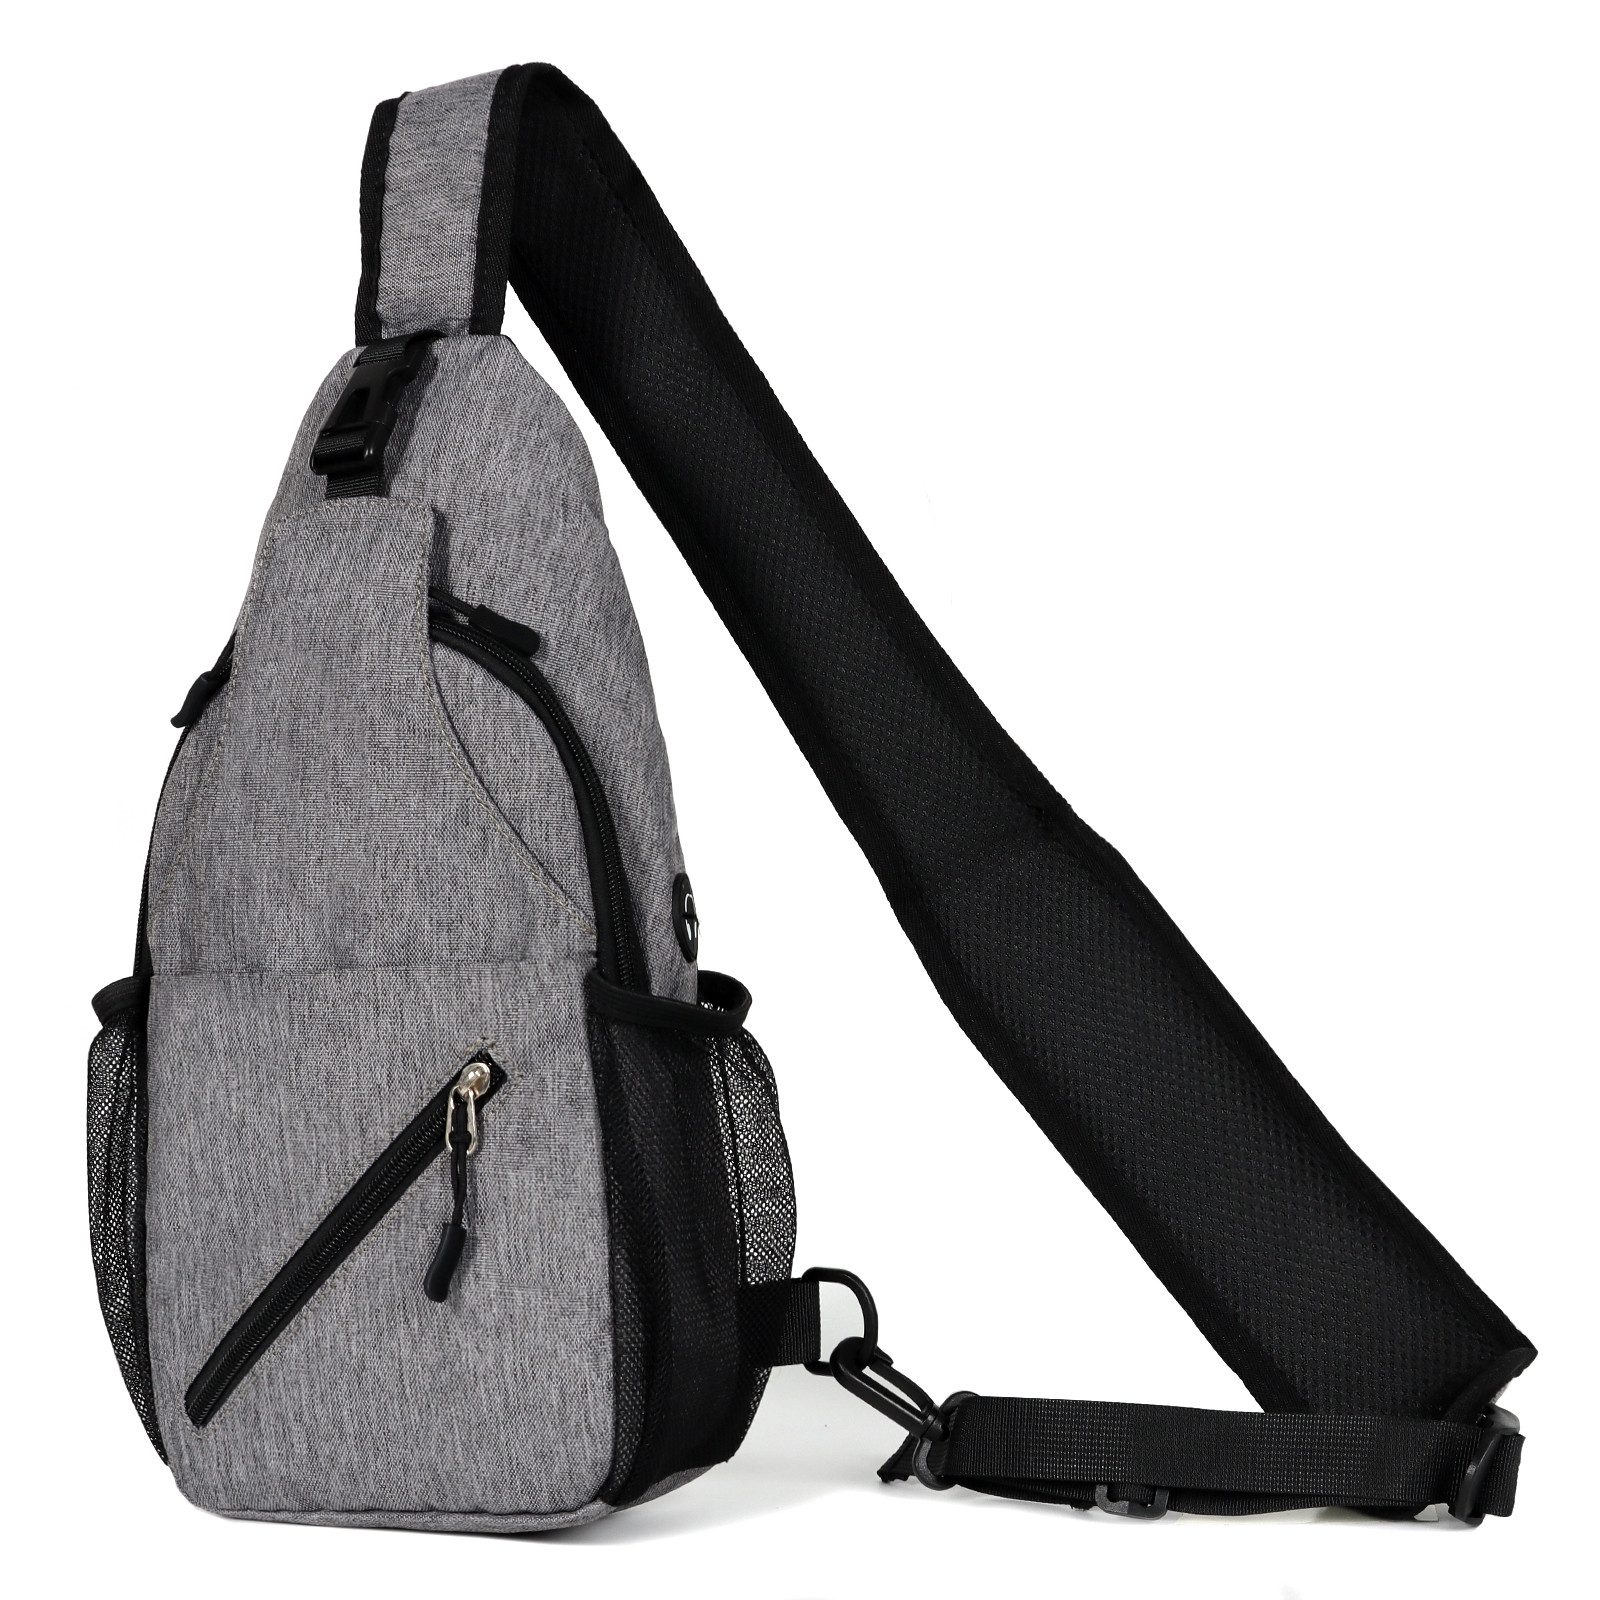 TAN.TOMI Bauchtasche Brusttasche mit USB-Ladeanschluss Anti-Diebstahl Sling Bag Herren, Klein Umhängetasche Outdoor Wasserdicht Lässig Leicht für Arbeit Reise